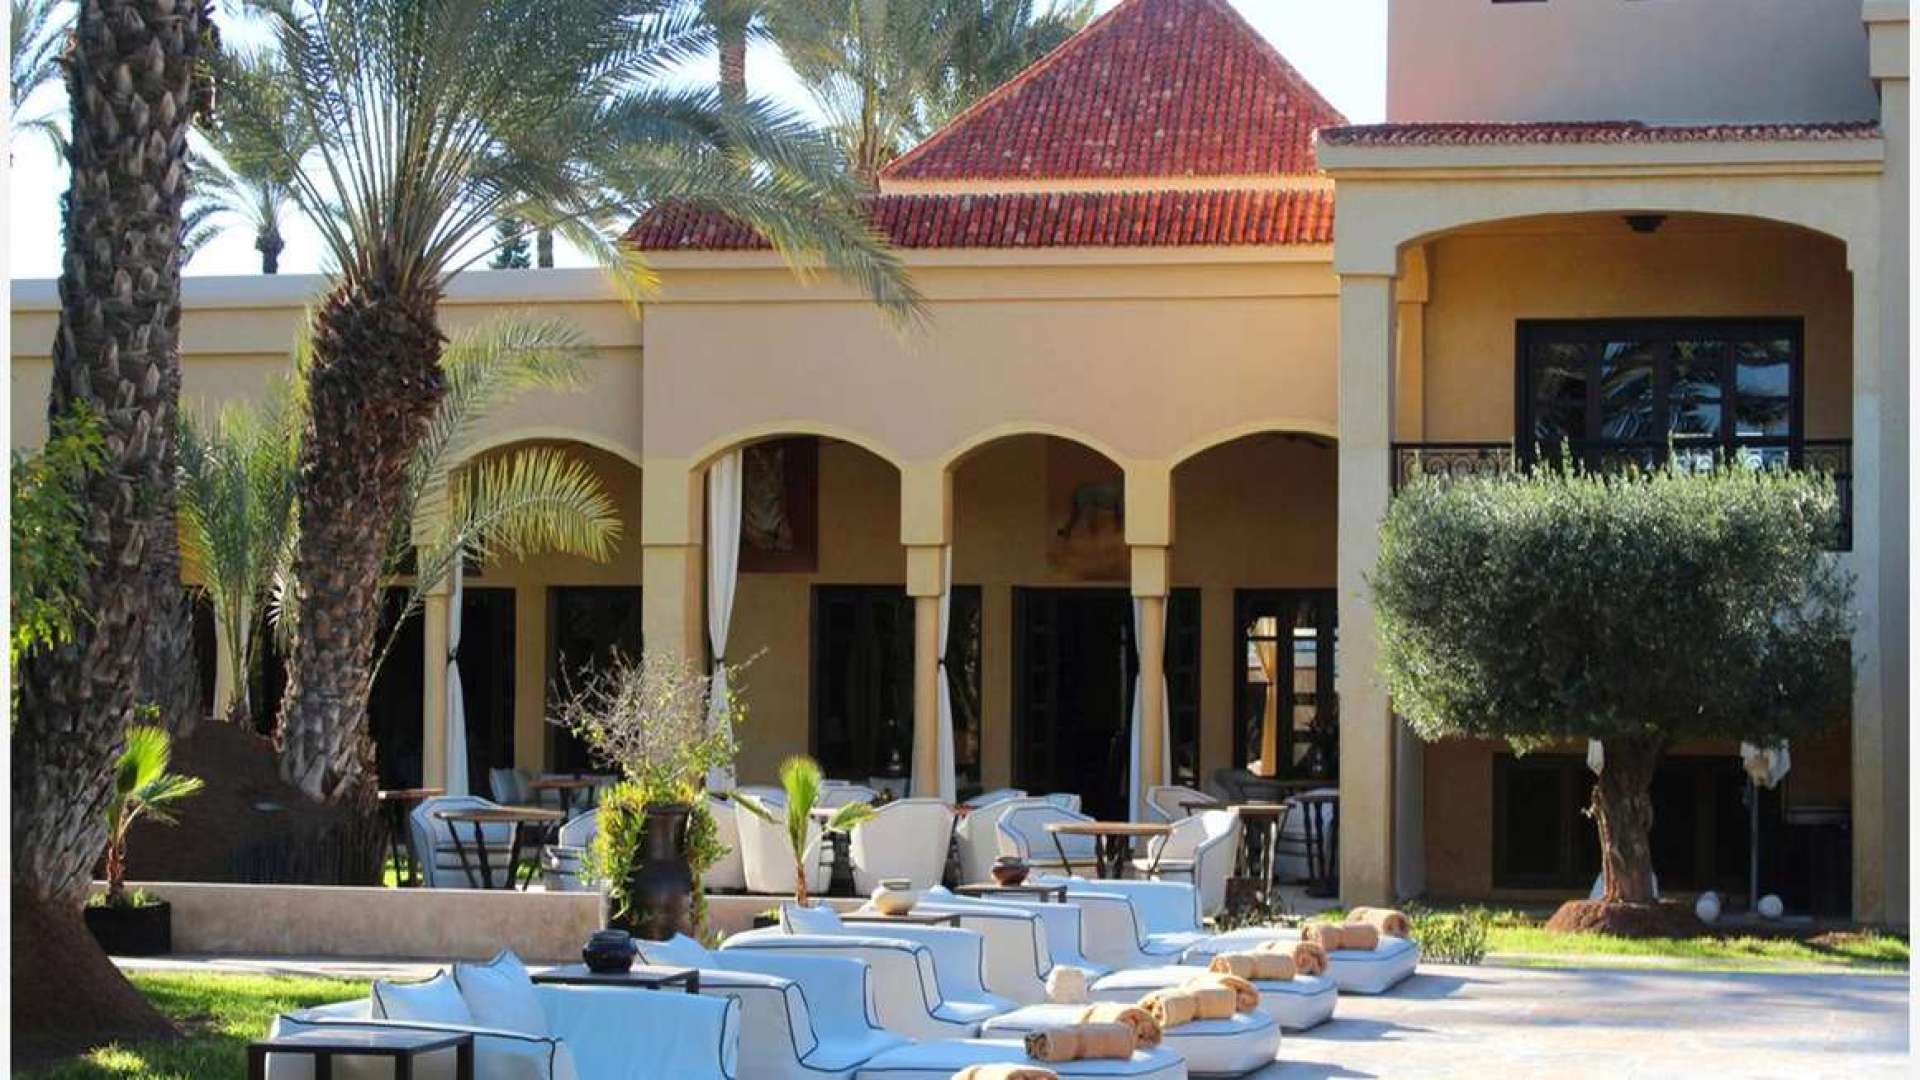 Location de vacances,Villa,Palais de luxe Palmeraie : luxe, charme et discrétion,Marrakech,Palmeraie